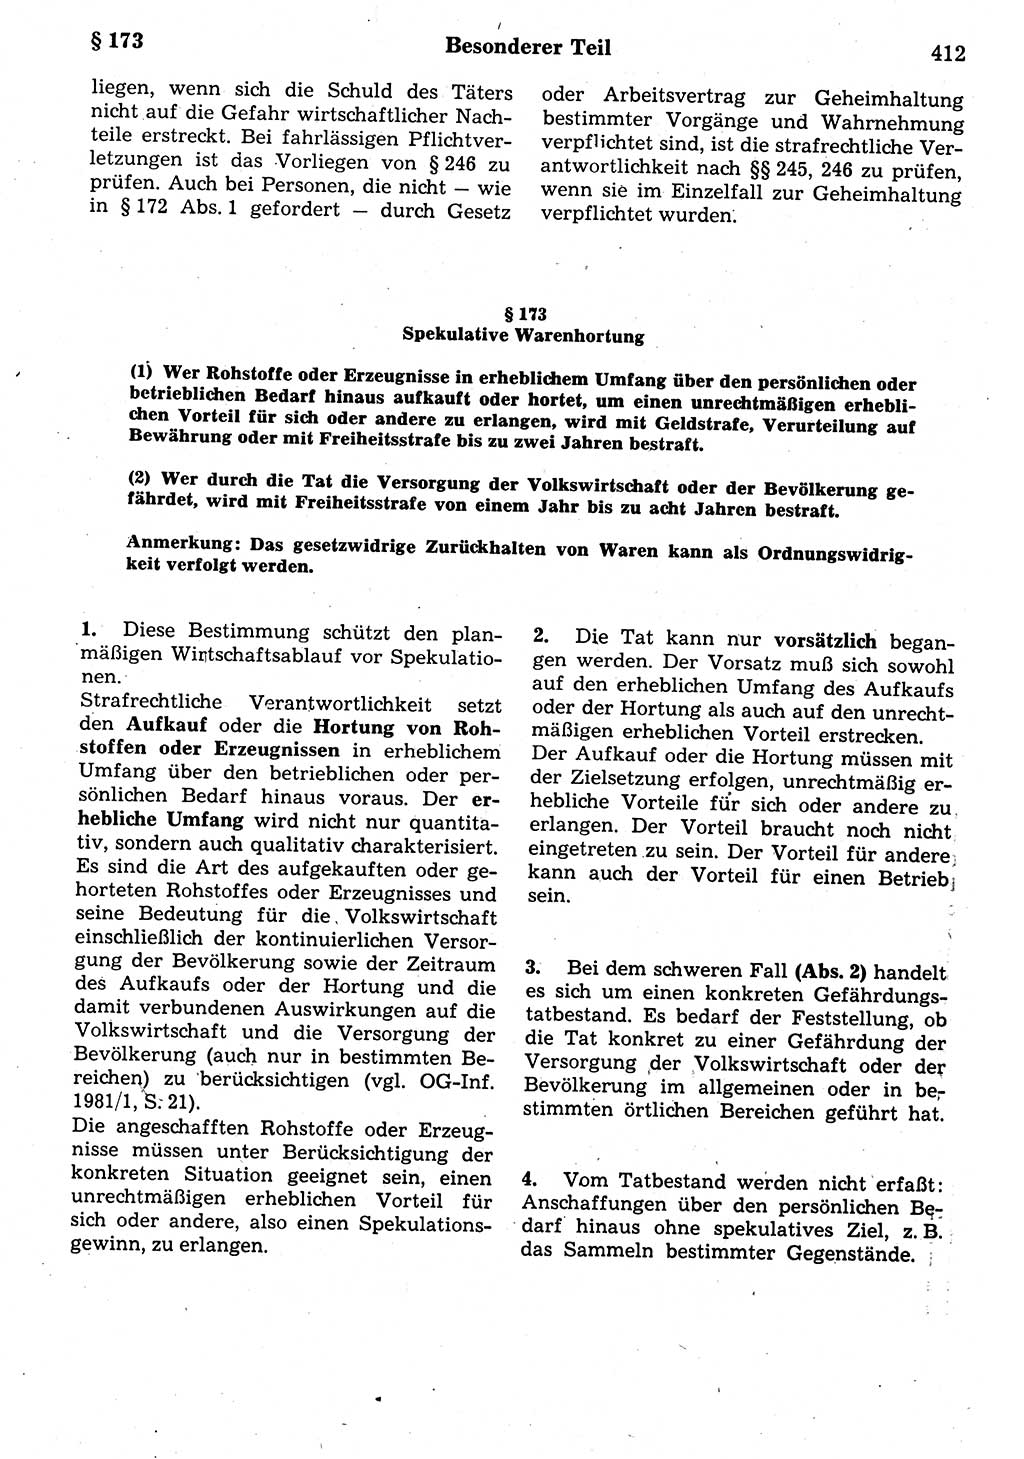 Strafrecht der Deutschen Demokratischen Republik (DDR), Kommentar zum Strafgesetzbuch (StGB) 1987, Seite 412 (Strafr. DDR Komm. StGB 1987, S. 412)